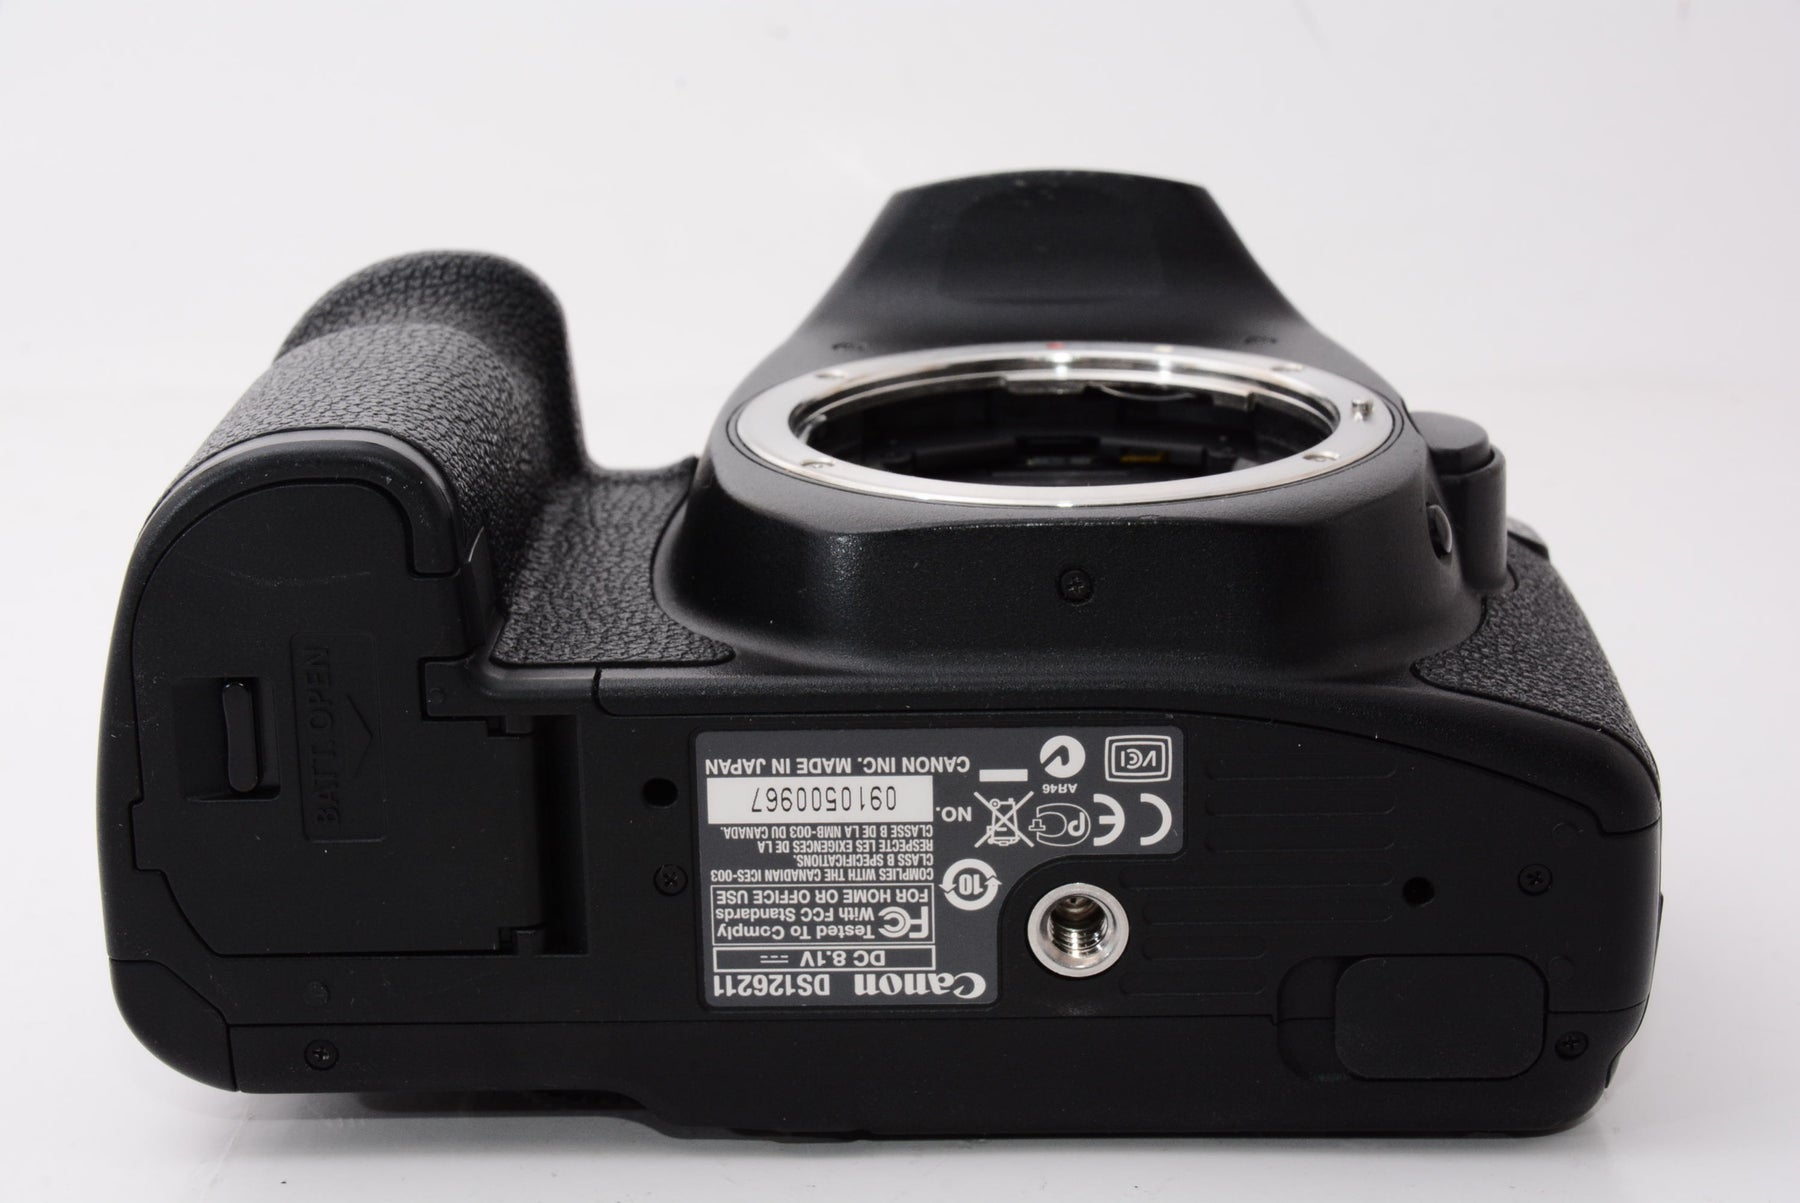 オススメ】Canon デジタル一眼レフカメラ EOS 50D ボディ EOS50D